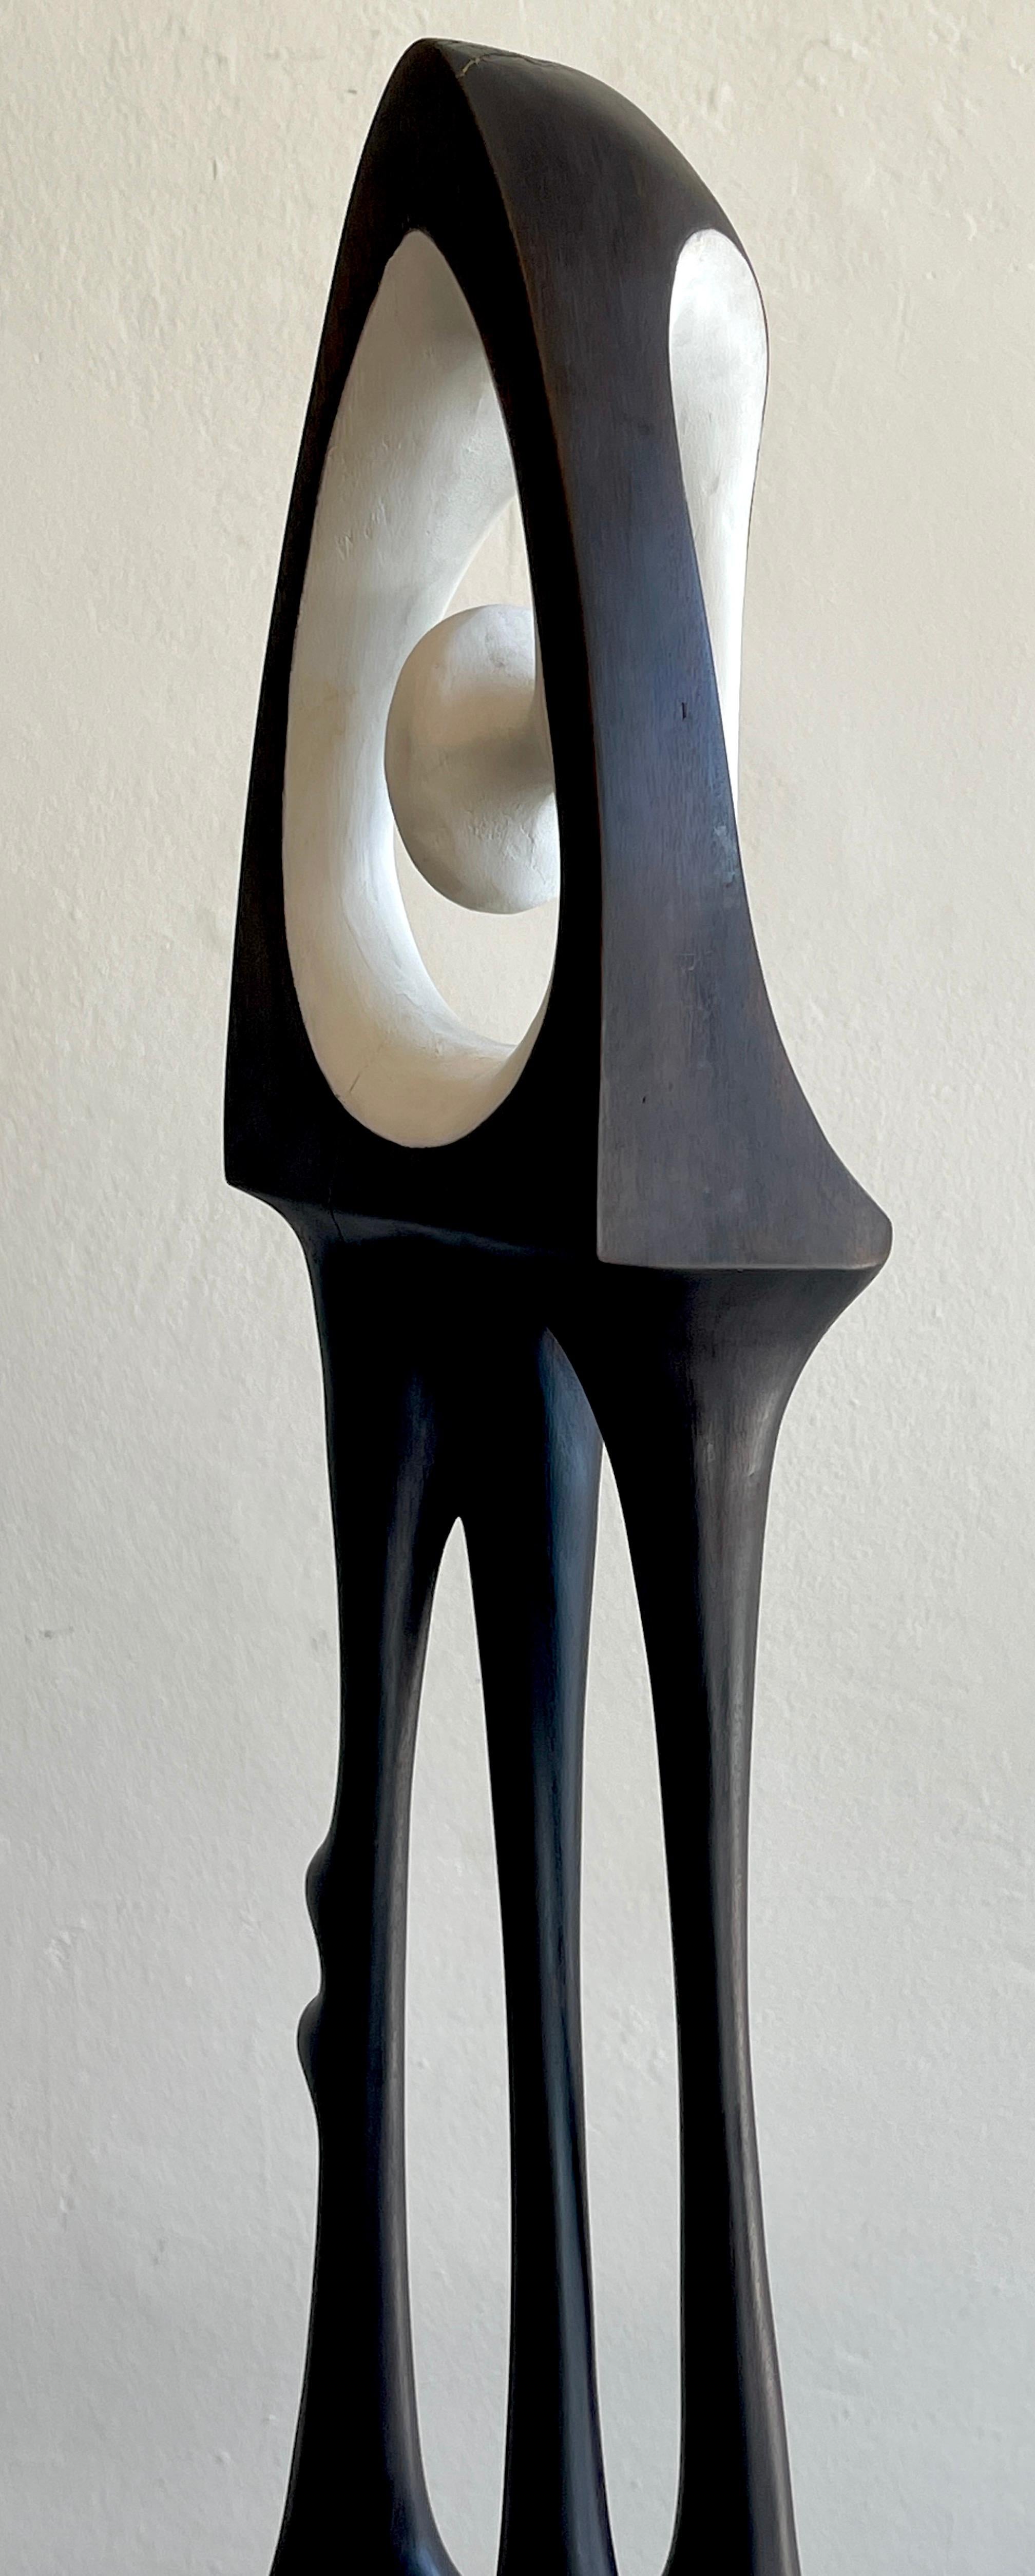 Agustín Cárdenas Abstract Polychromed Wood Sculpture 2